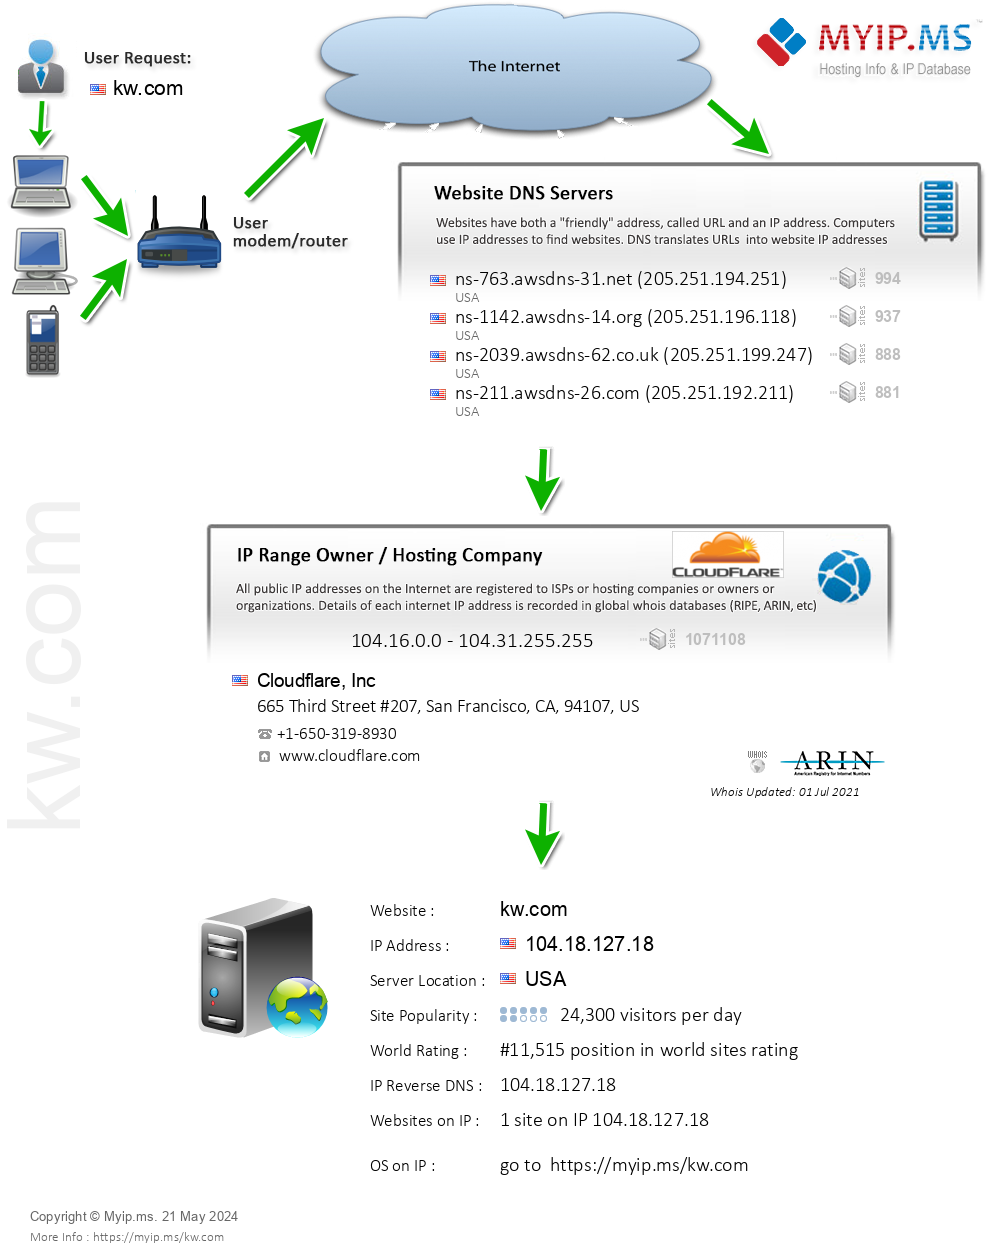 Kw.com - Website Hosting Visual IP Diagram